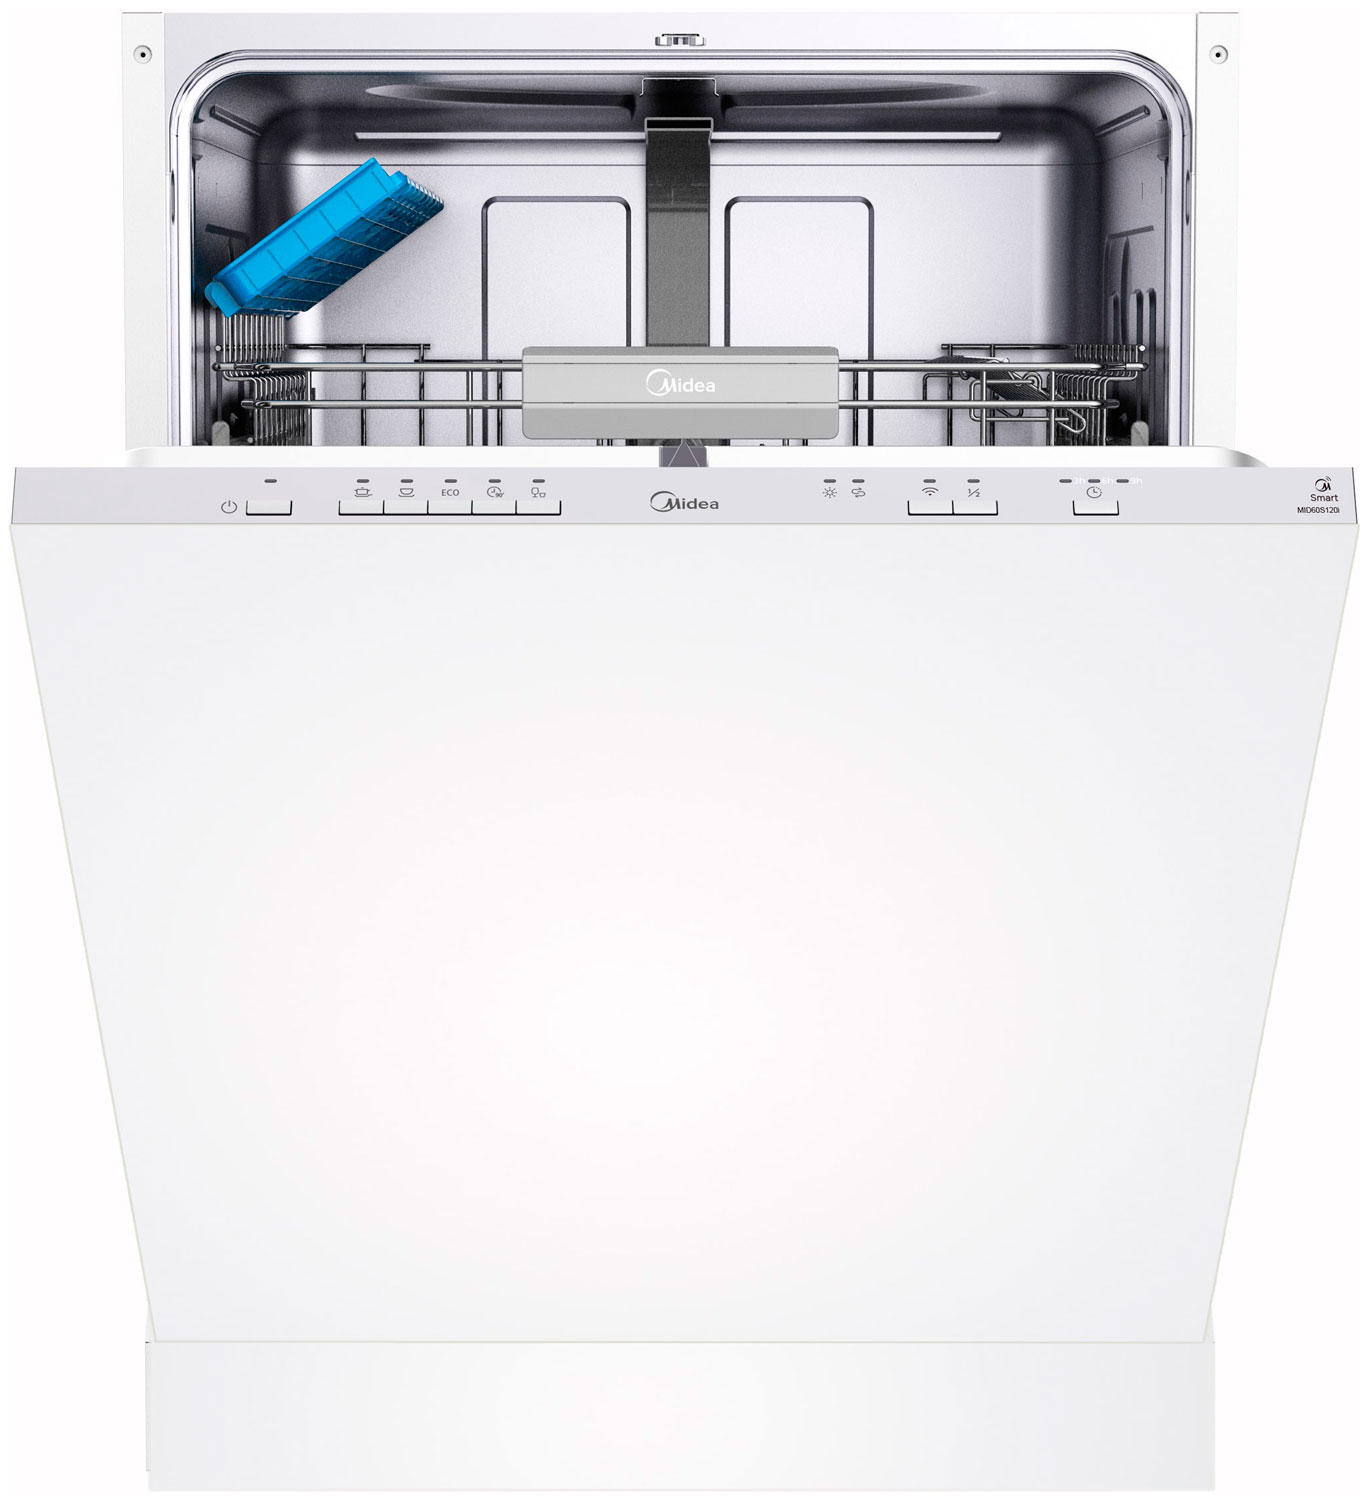 Встраиваемая посудомоечная машина Midea MID60S120i встраиваемая посудомоечная машина midea mid60s140i